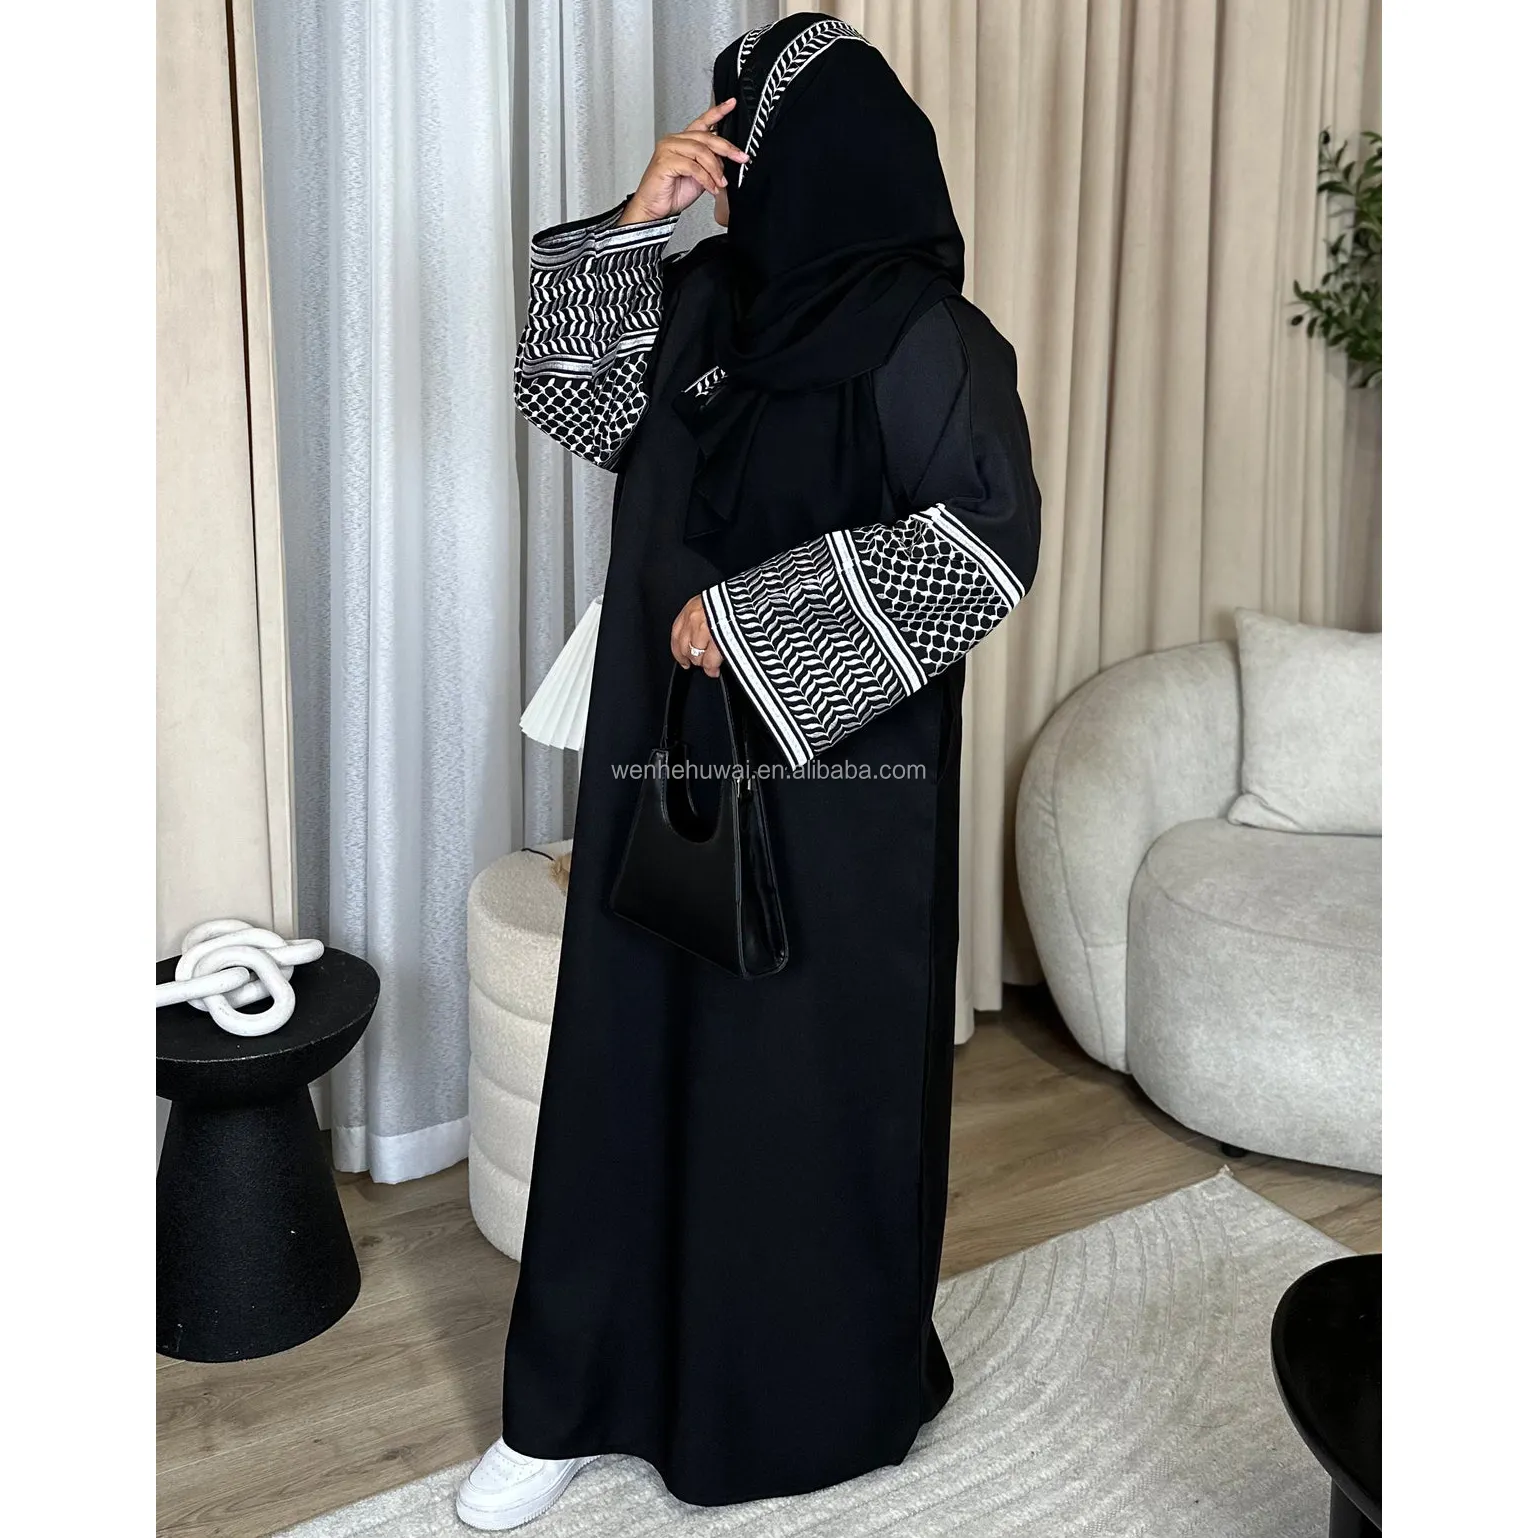 कस्टम इस्लामिक मध्य पूर्व अरब फ़िलिस्तीन केफ़ियेह पोशाक